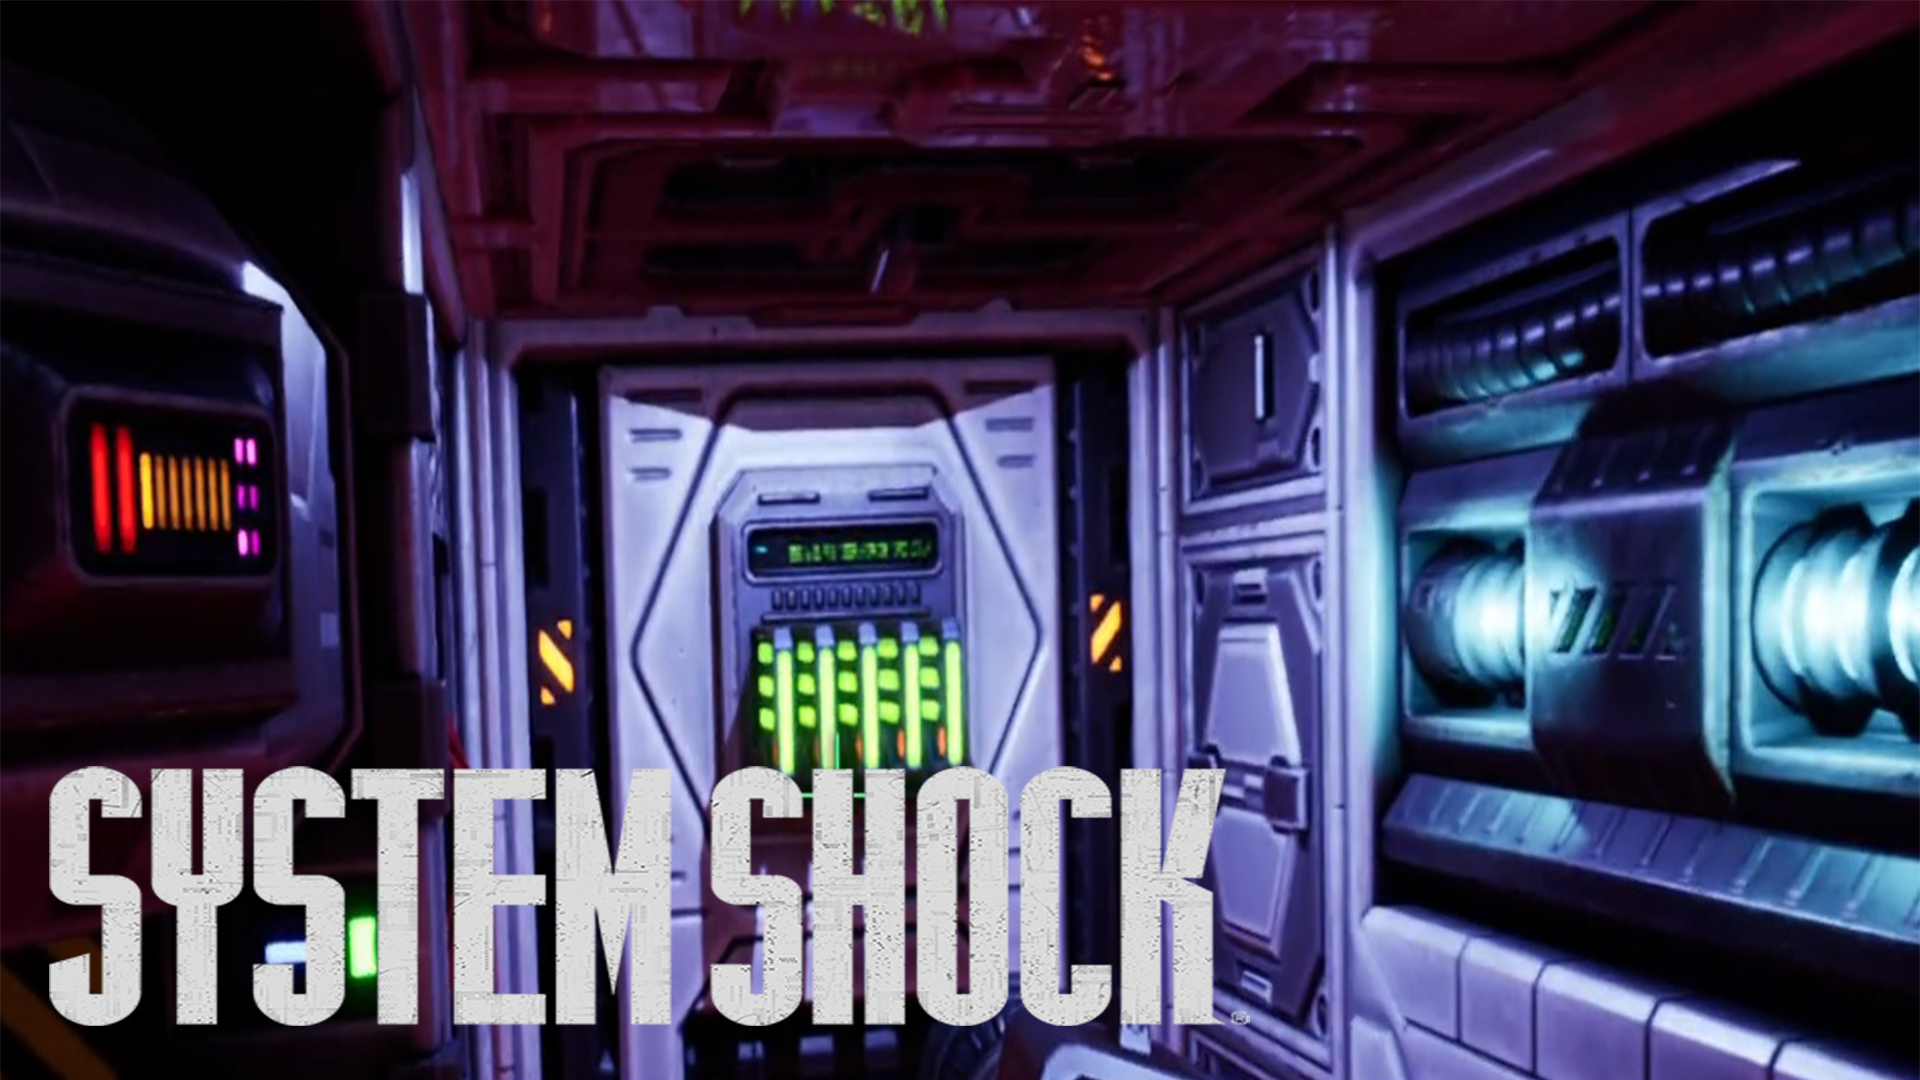 System shock remake прохождение